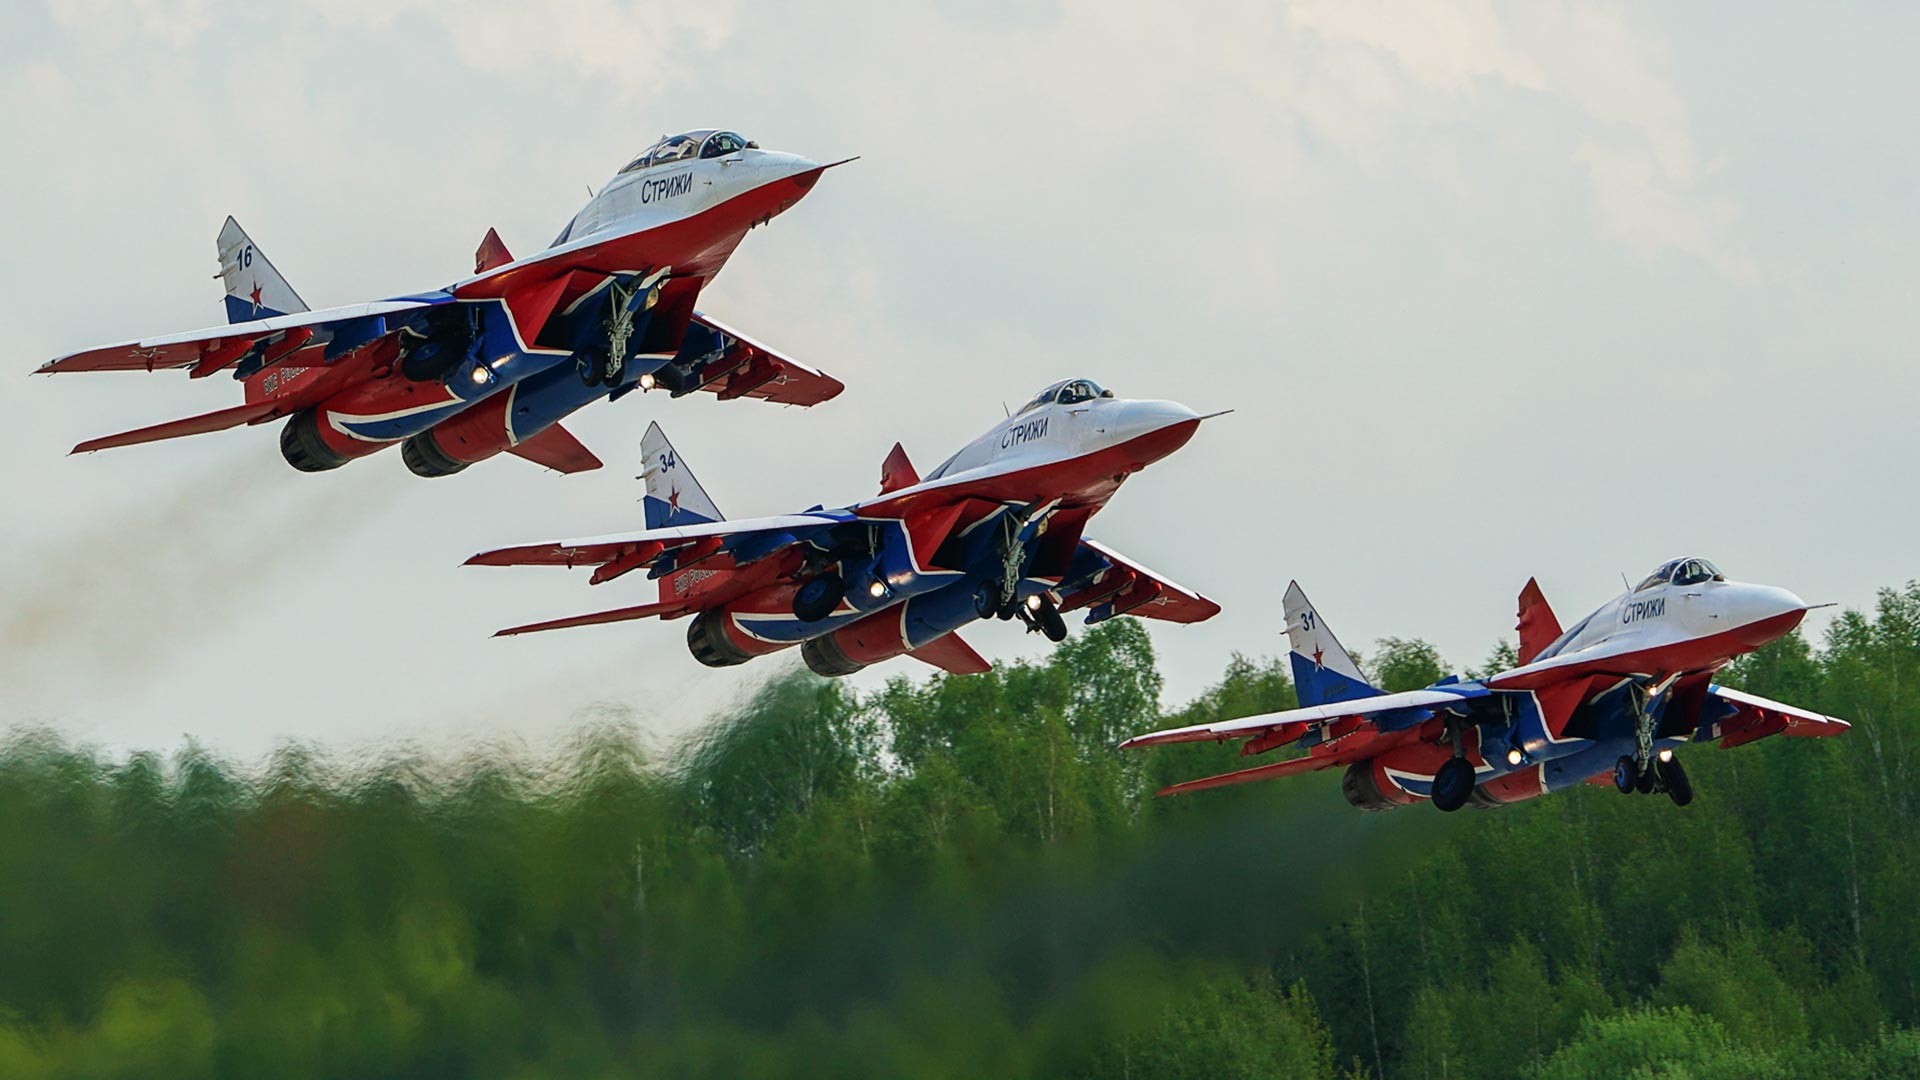 Les chasseurs MiG-29 de l'équipe de voltige aérienne Striji effectuent un vol de démonstration au-dessus de l'aérodrome de Koubinka
